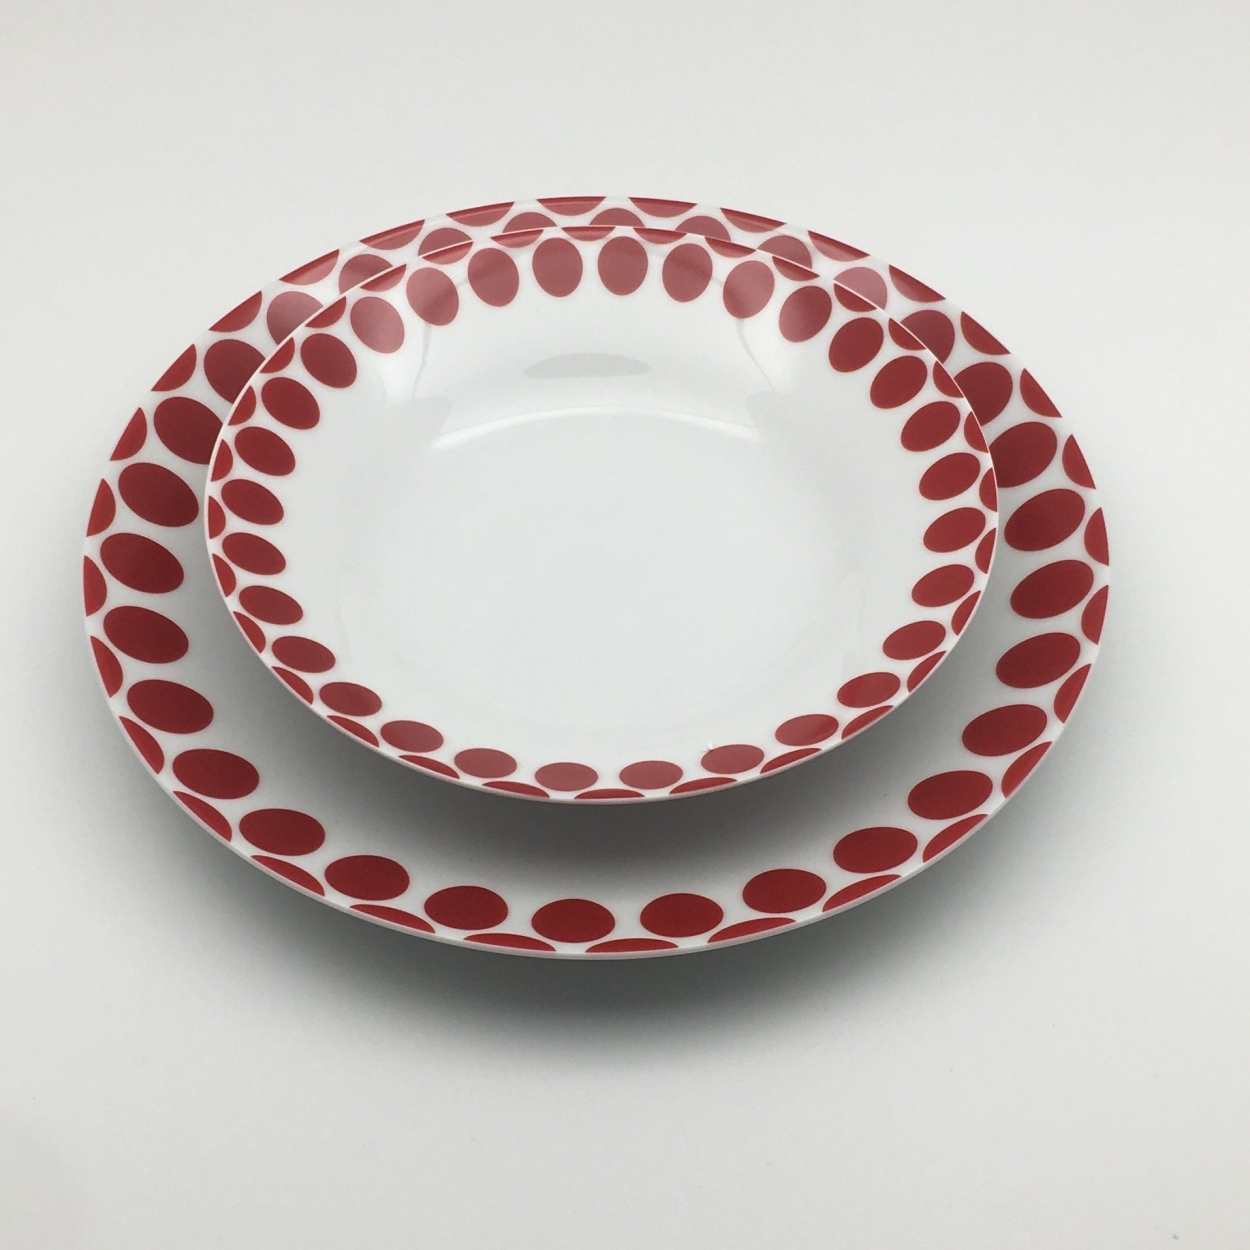 Đĩa sứ SASA được thiết kế với kiểu dáng và màu sắc đơn giản nhưng tinh tế và sang trọng. Kích thước được đo lường một cách kĩ lưỡng để làm nổi bật không gian bàn ăn.